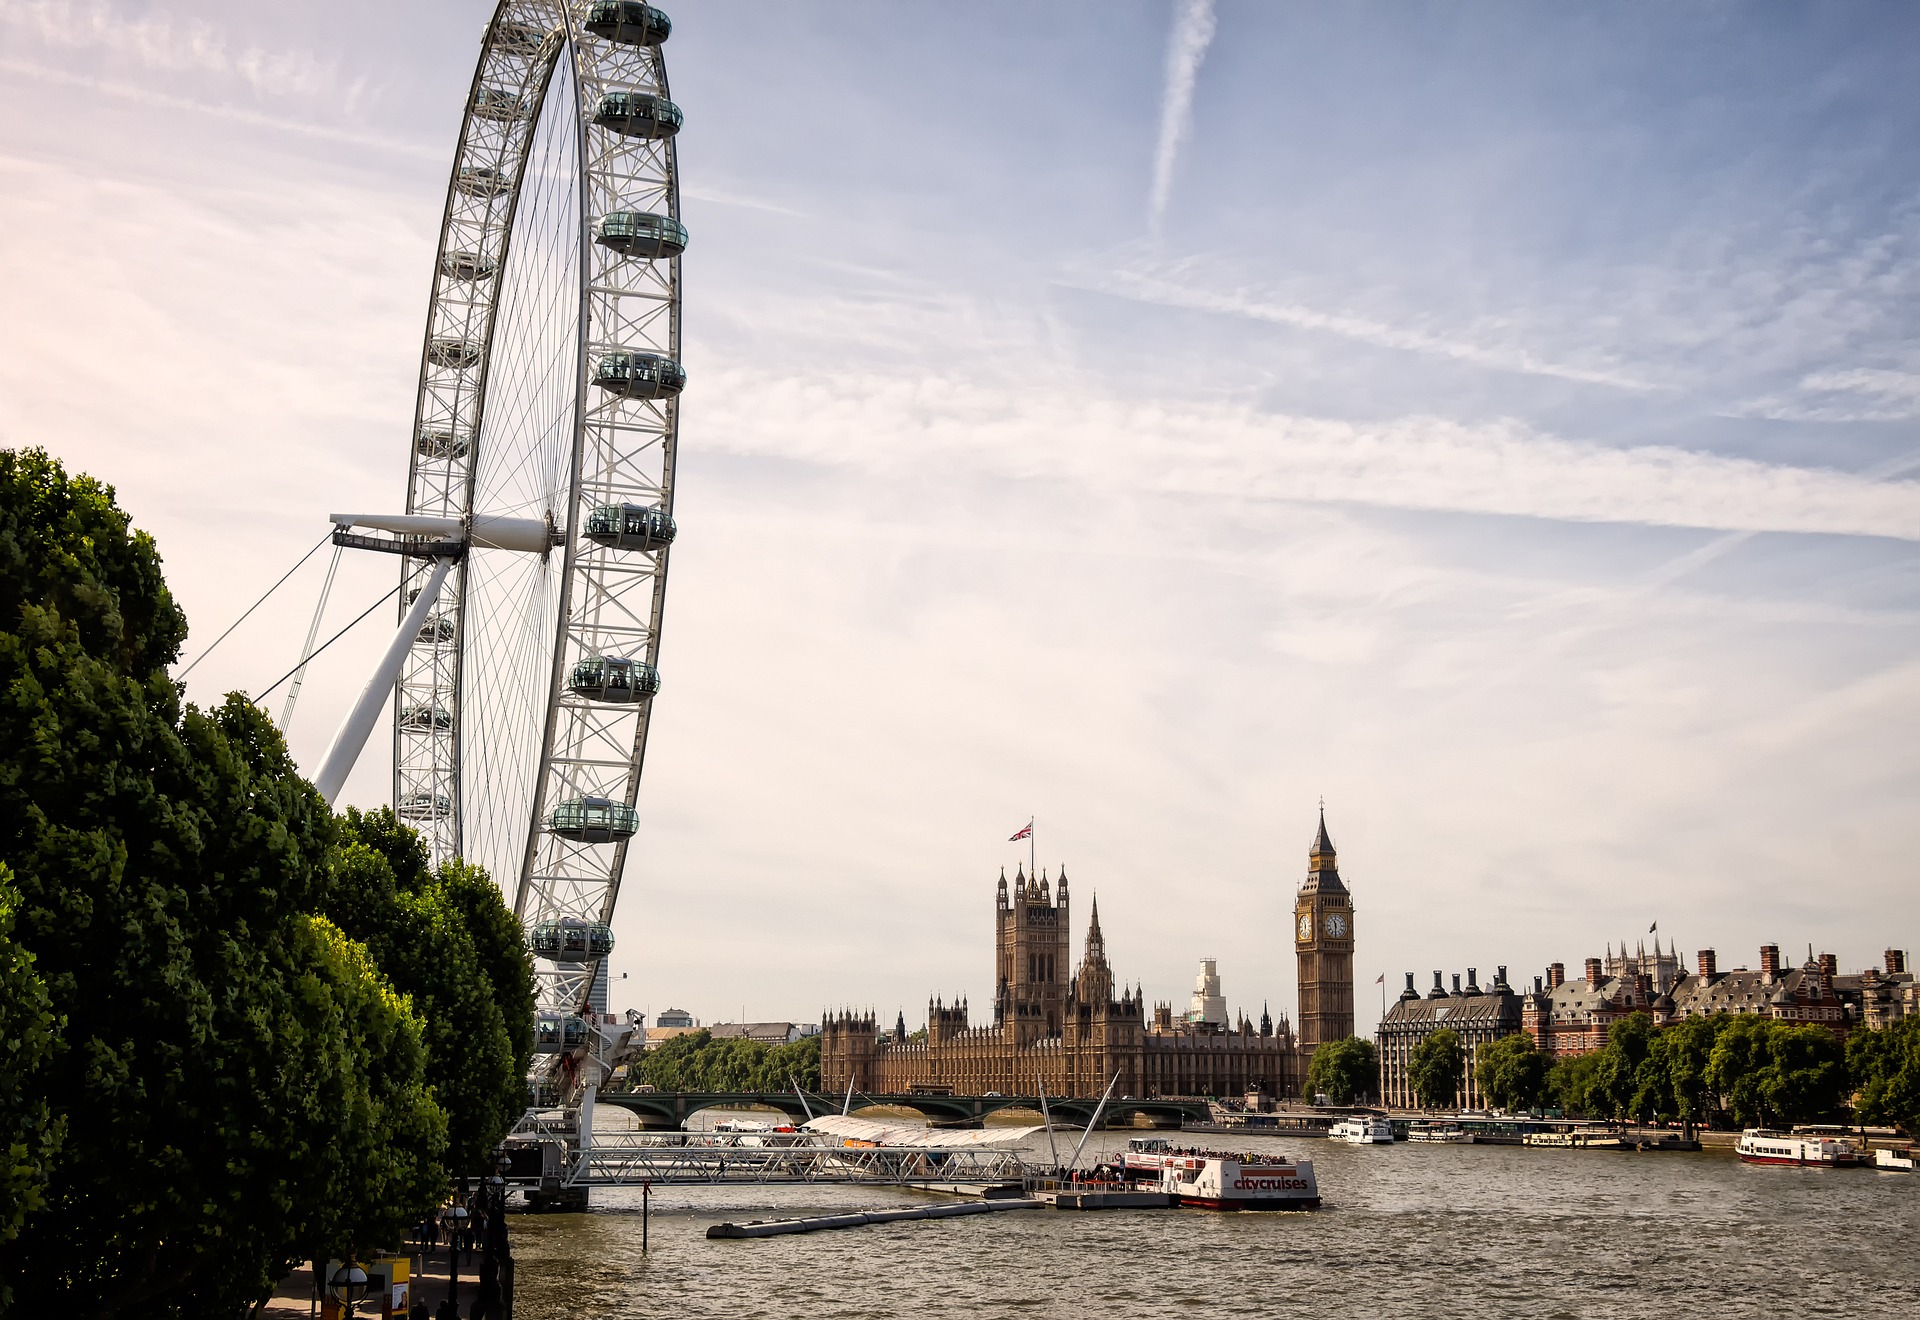 Londra: cosa vedere e offerte voli 2018